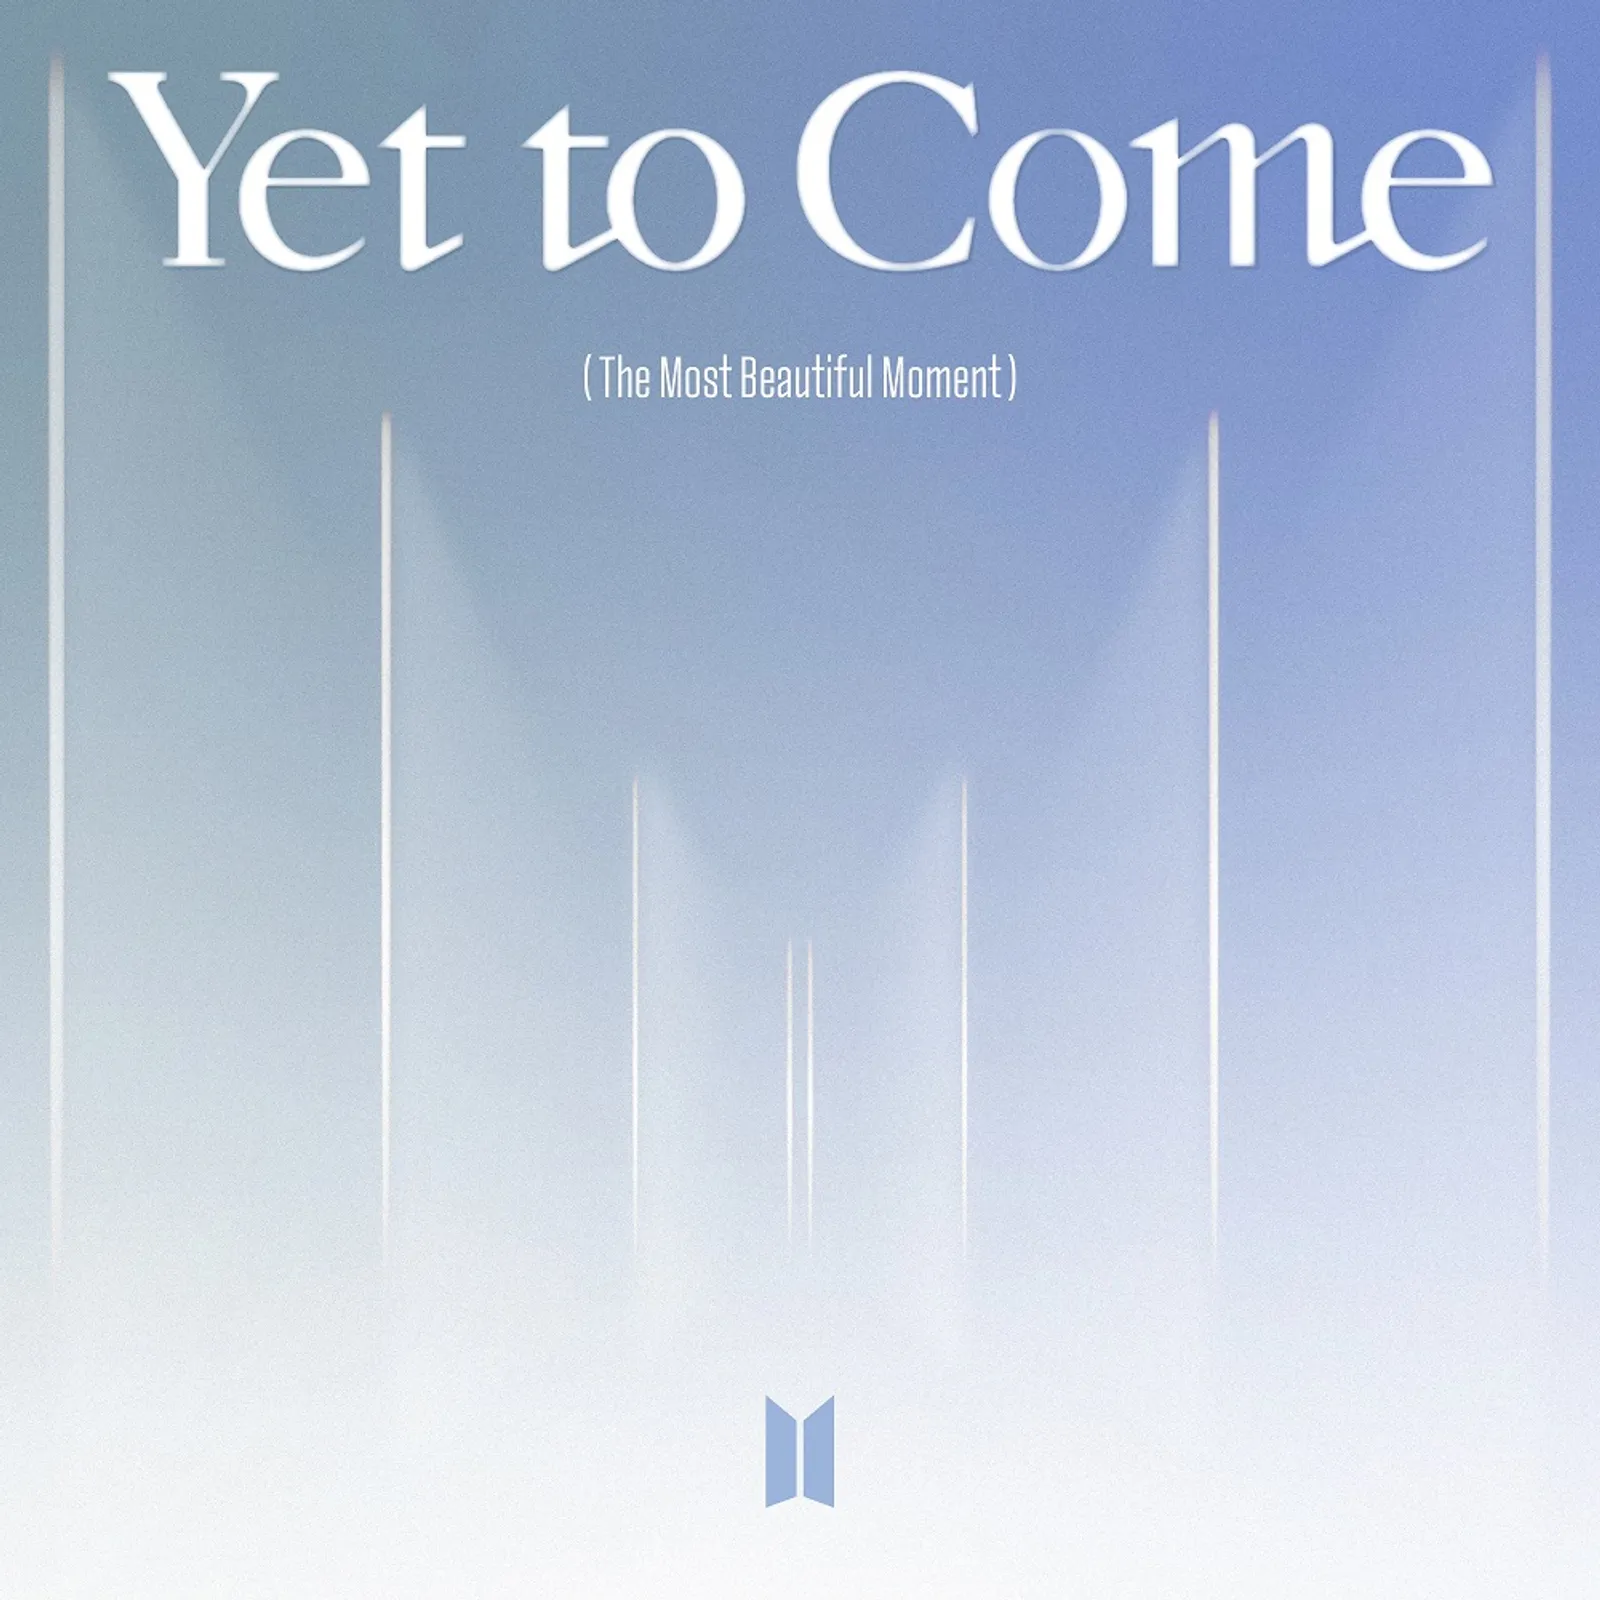 Lirik Lagu BTS "Yet To Come", Harapan Momen Terbaik yang akan Datang